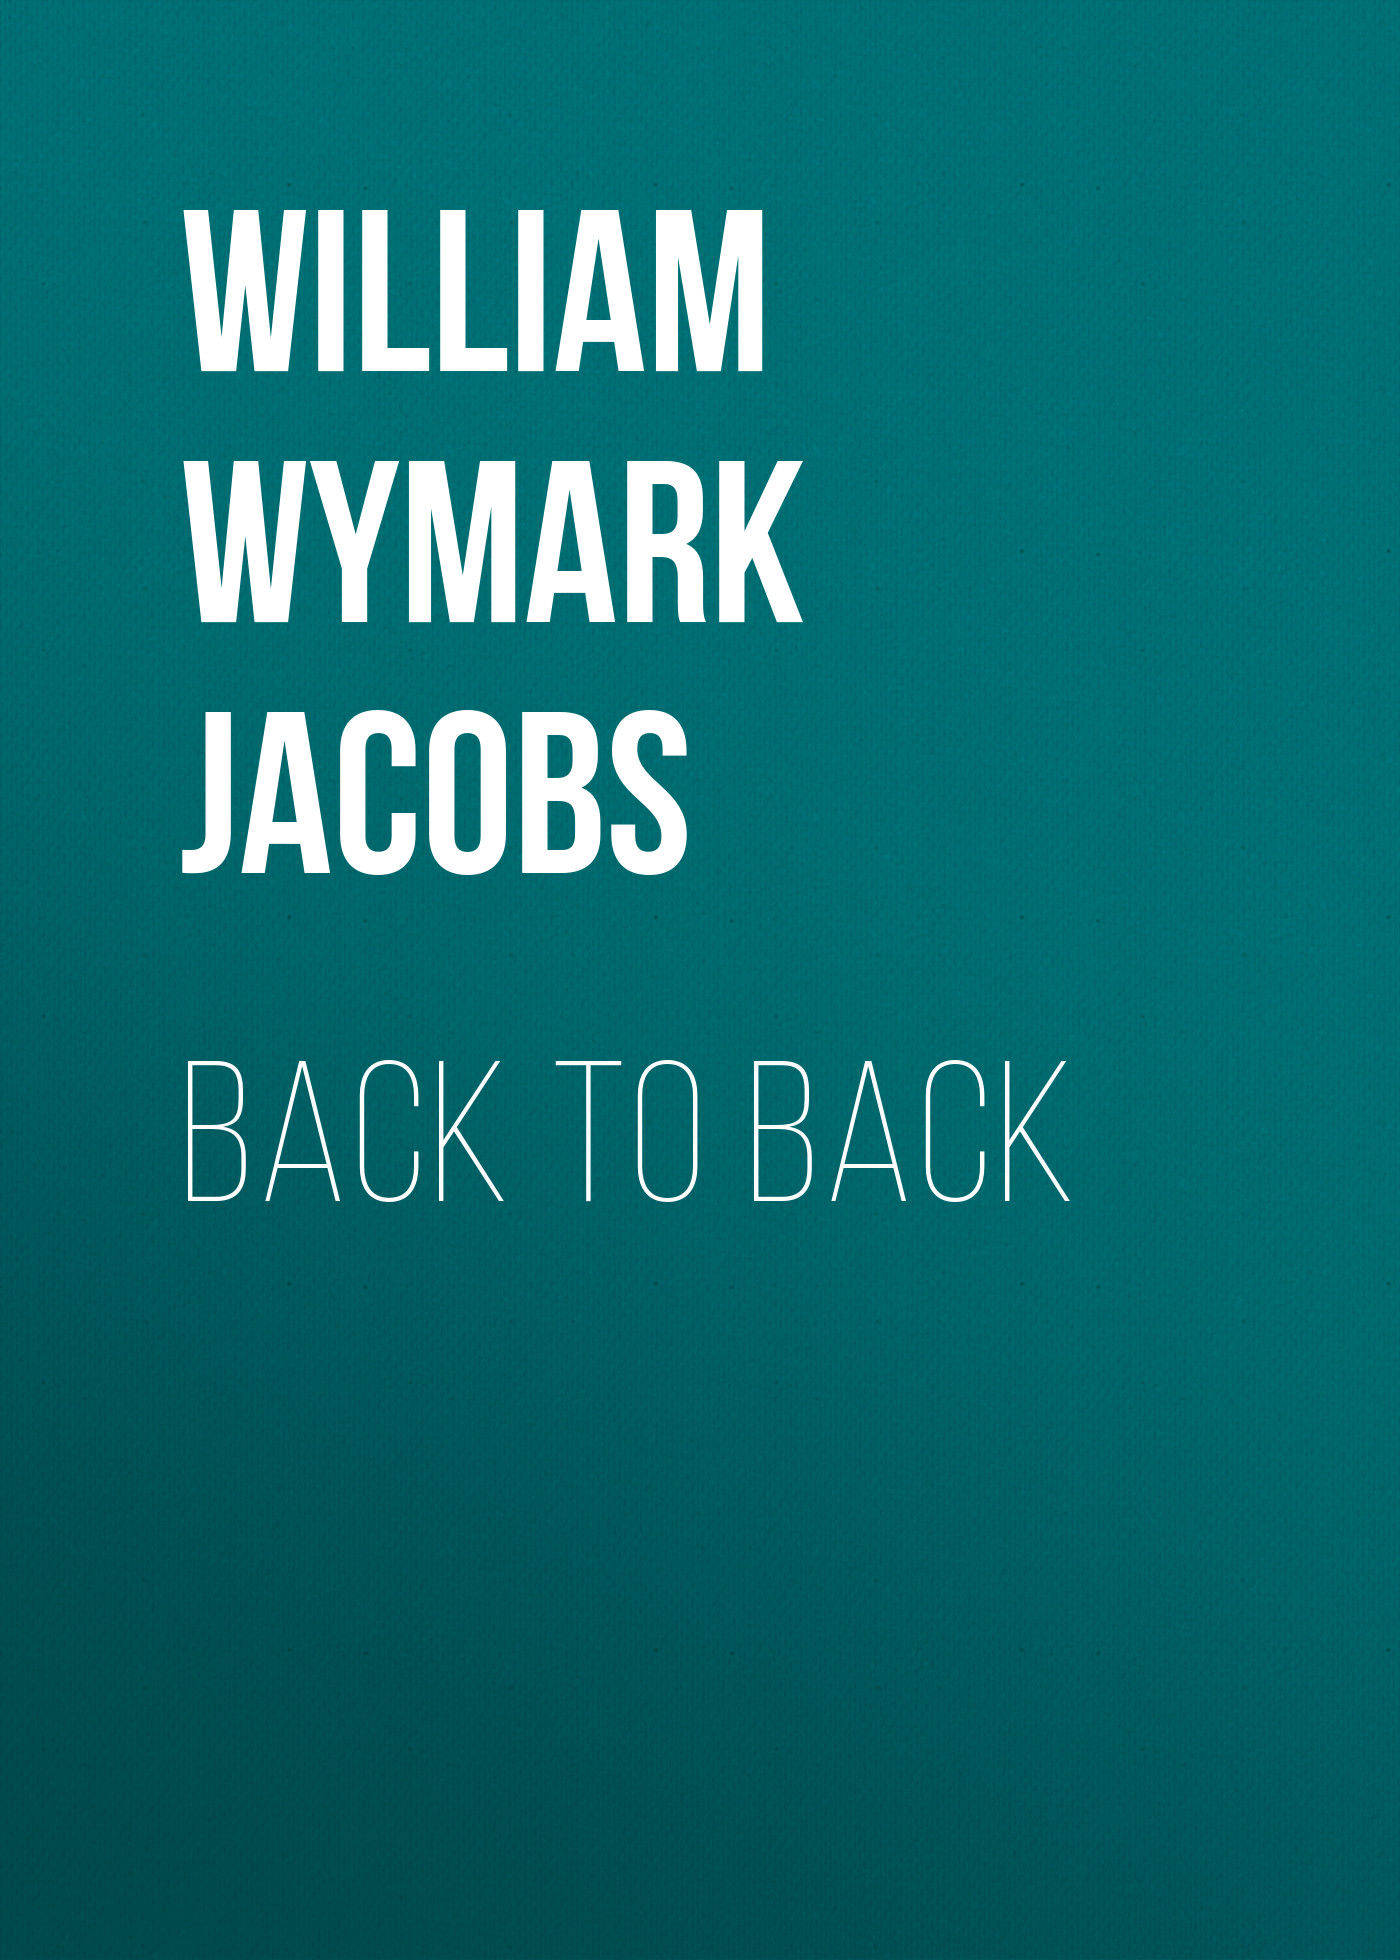 Книга Back to Back из серии , созданная William Wymark Jacobs, может относится к жанру Зарубежный юмор, Зарубежная старинная литература, Зарубежная классика. Стоимость электронной книги Back to Back с идентификатором 34842286 составляет 0 руб.